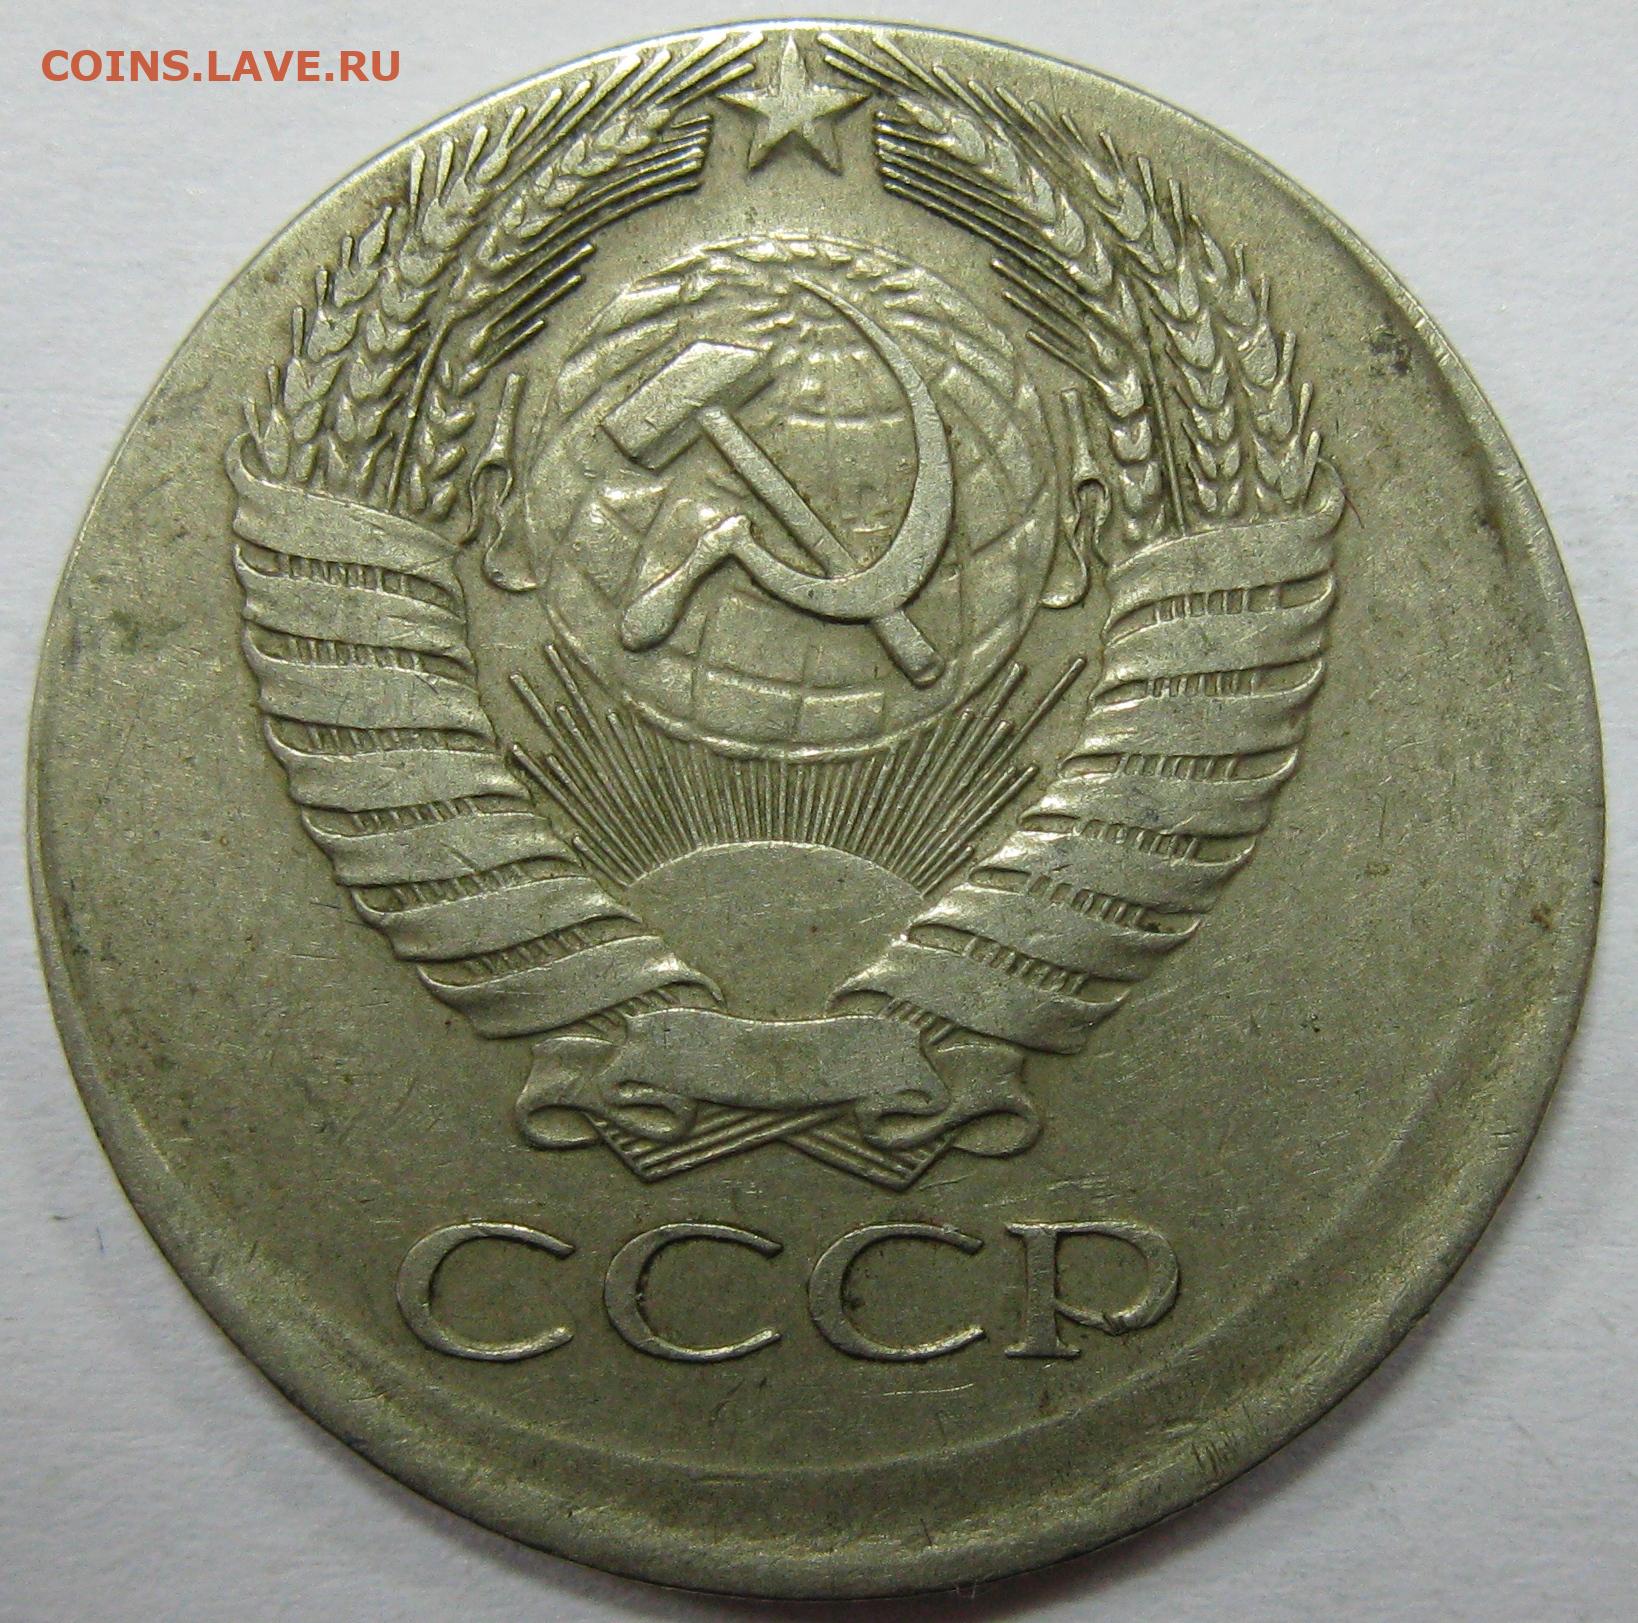 Монета 10 копеек м. 10 Копеек 1990 года. 10 Копеек 1990 года с буквой м. СССР 15 копеек 1990 год - UNC. 20 Копеек 1972.